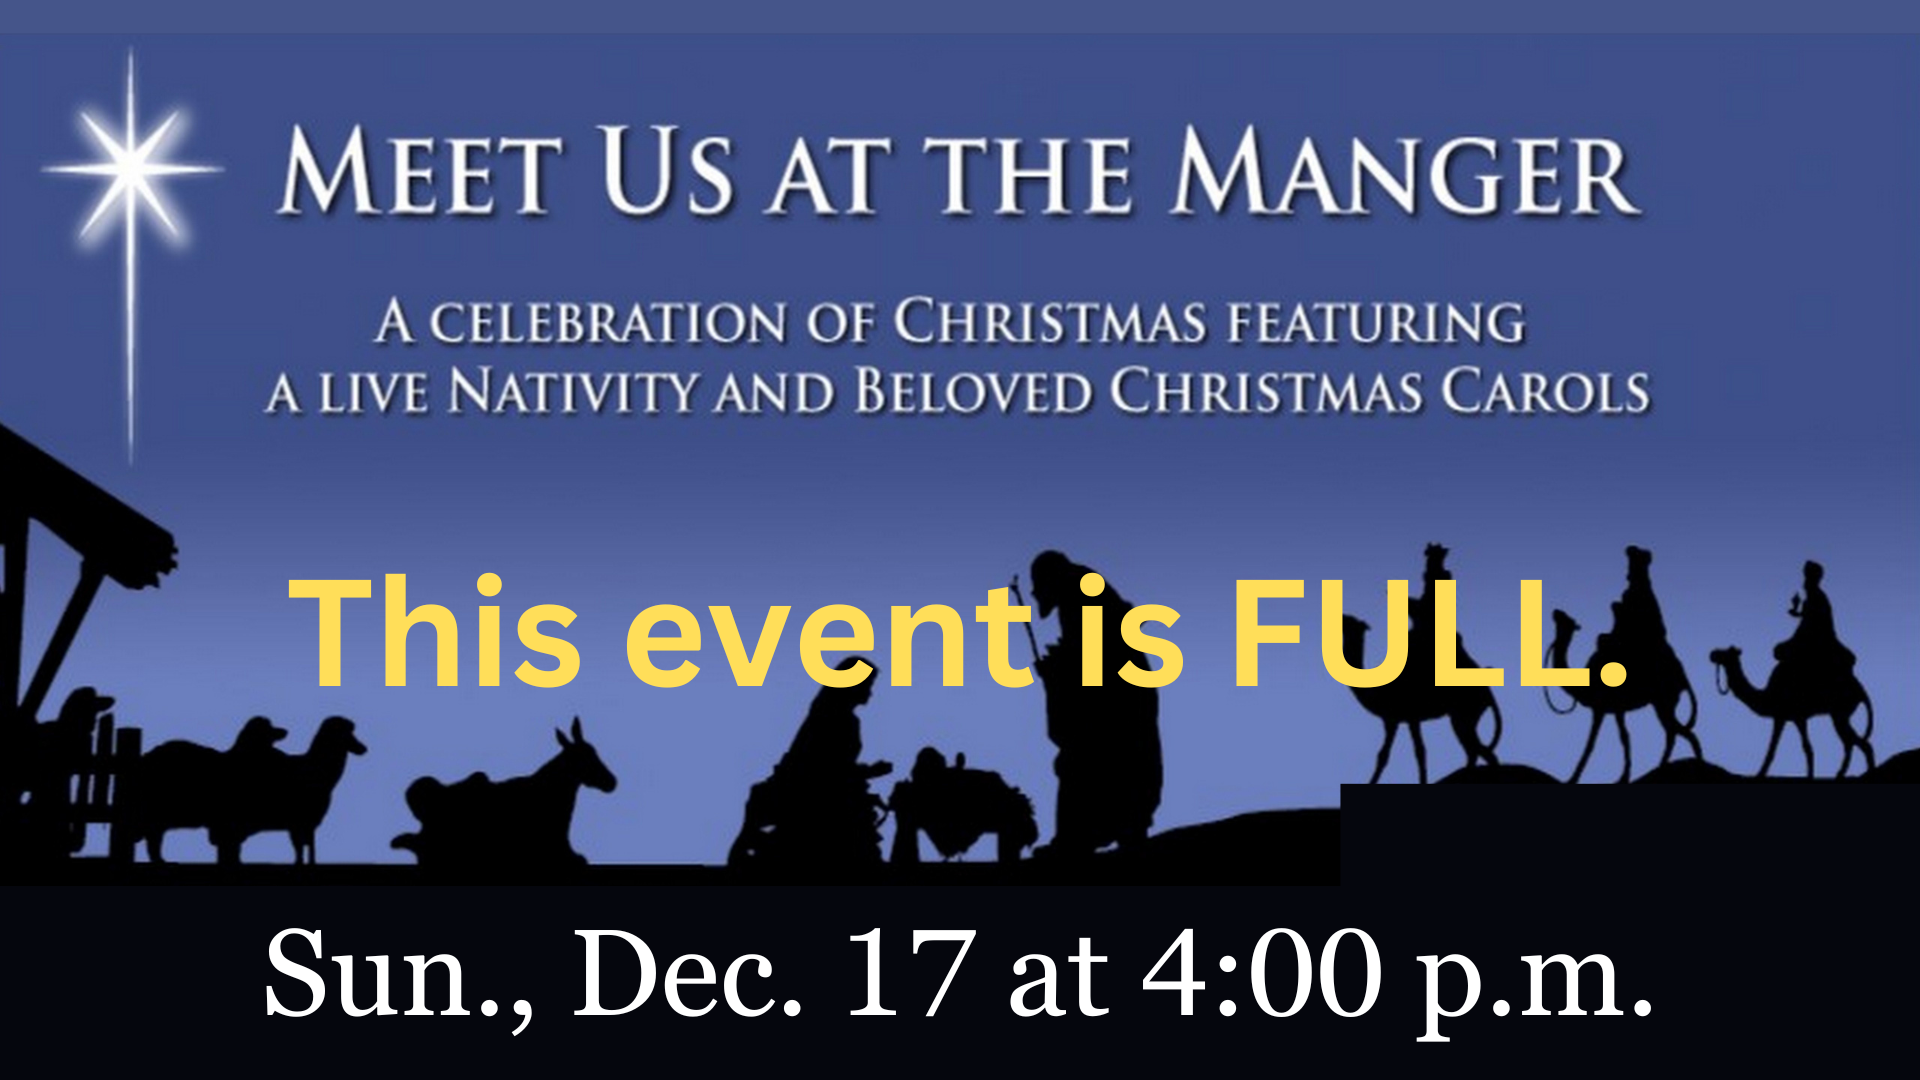 Live Nativity - Sun., Dec. 17 at 4:00 p.m. - Trinity United Methodist  Church in Wilmette IL